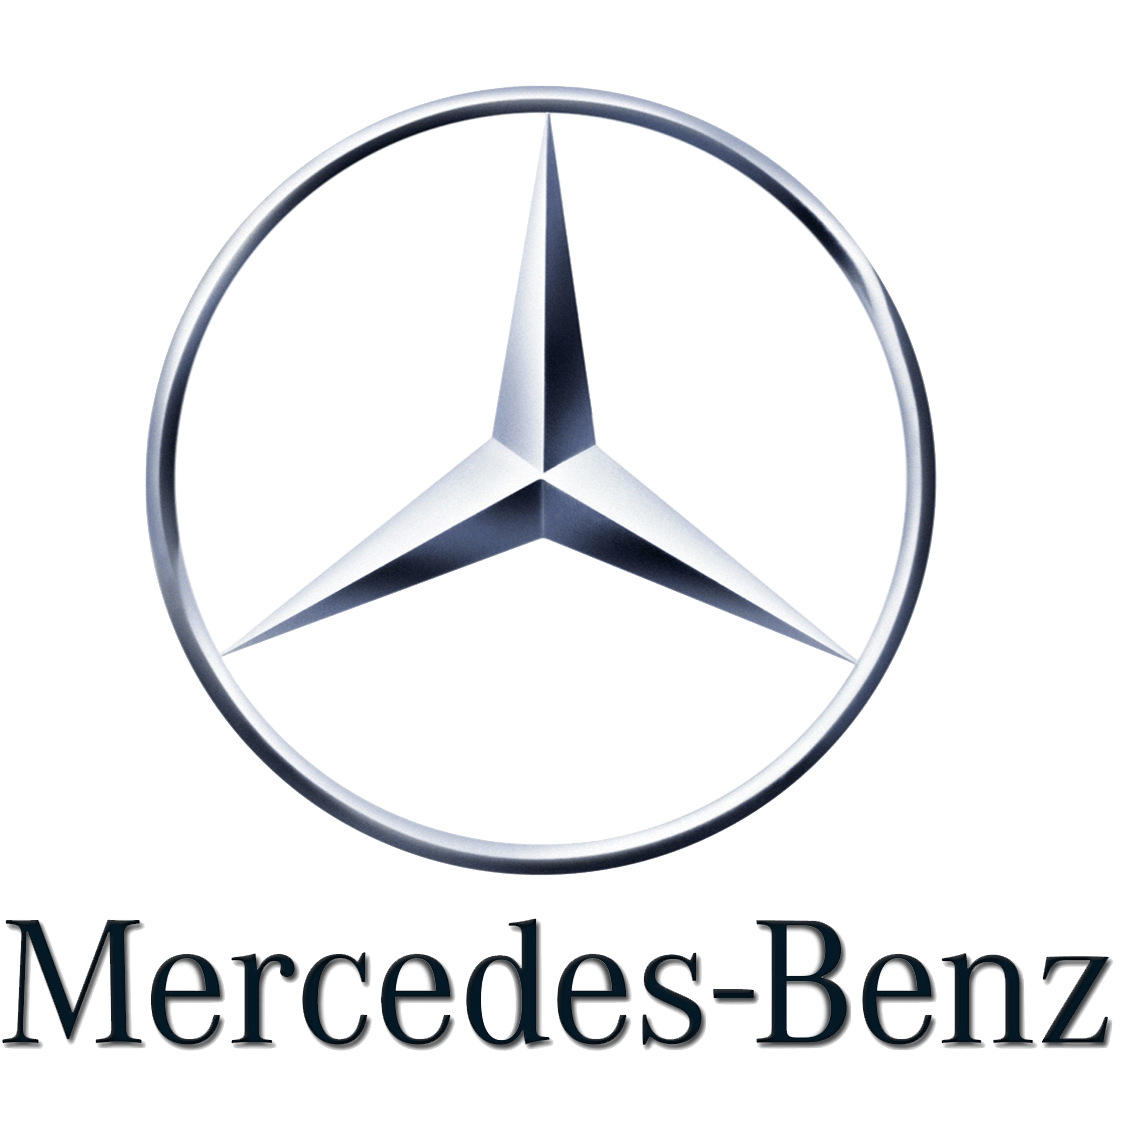 Benz Trucks Logo - National Brand Manager, Mercedes Benz Trucks